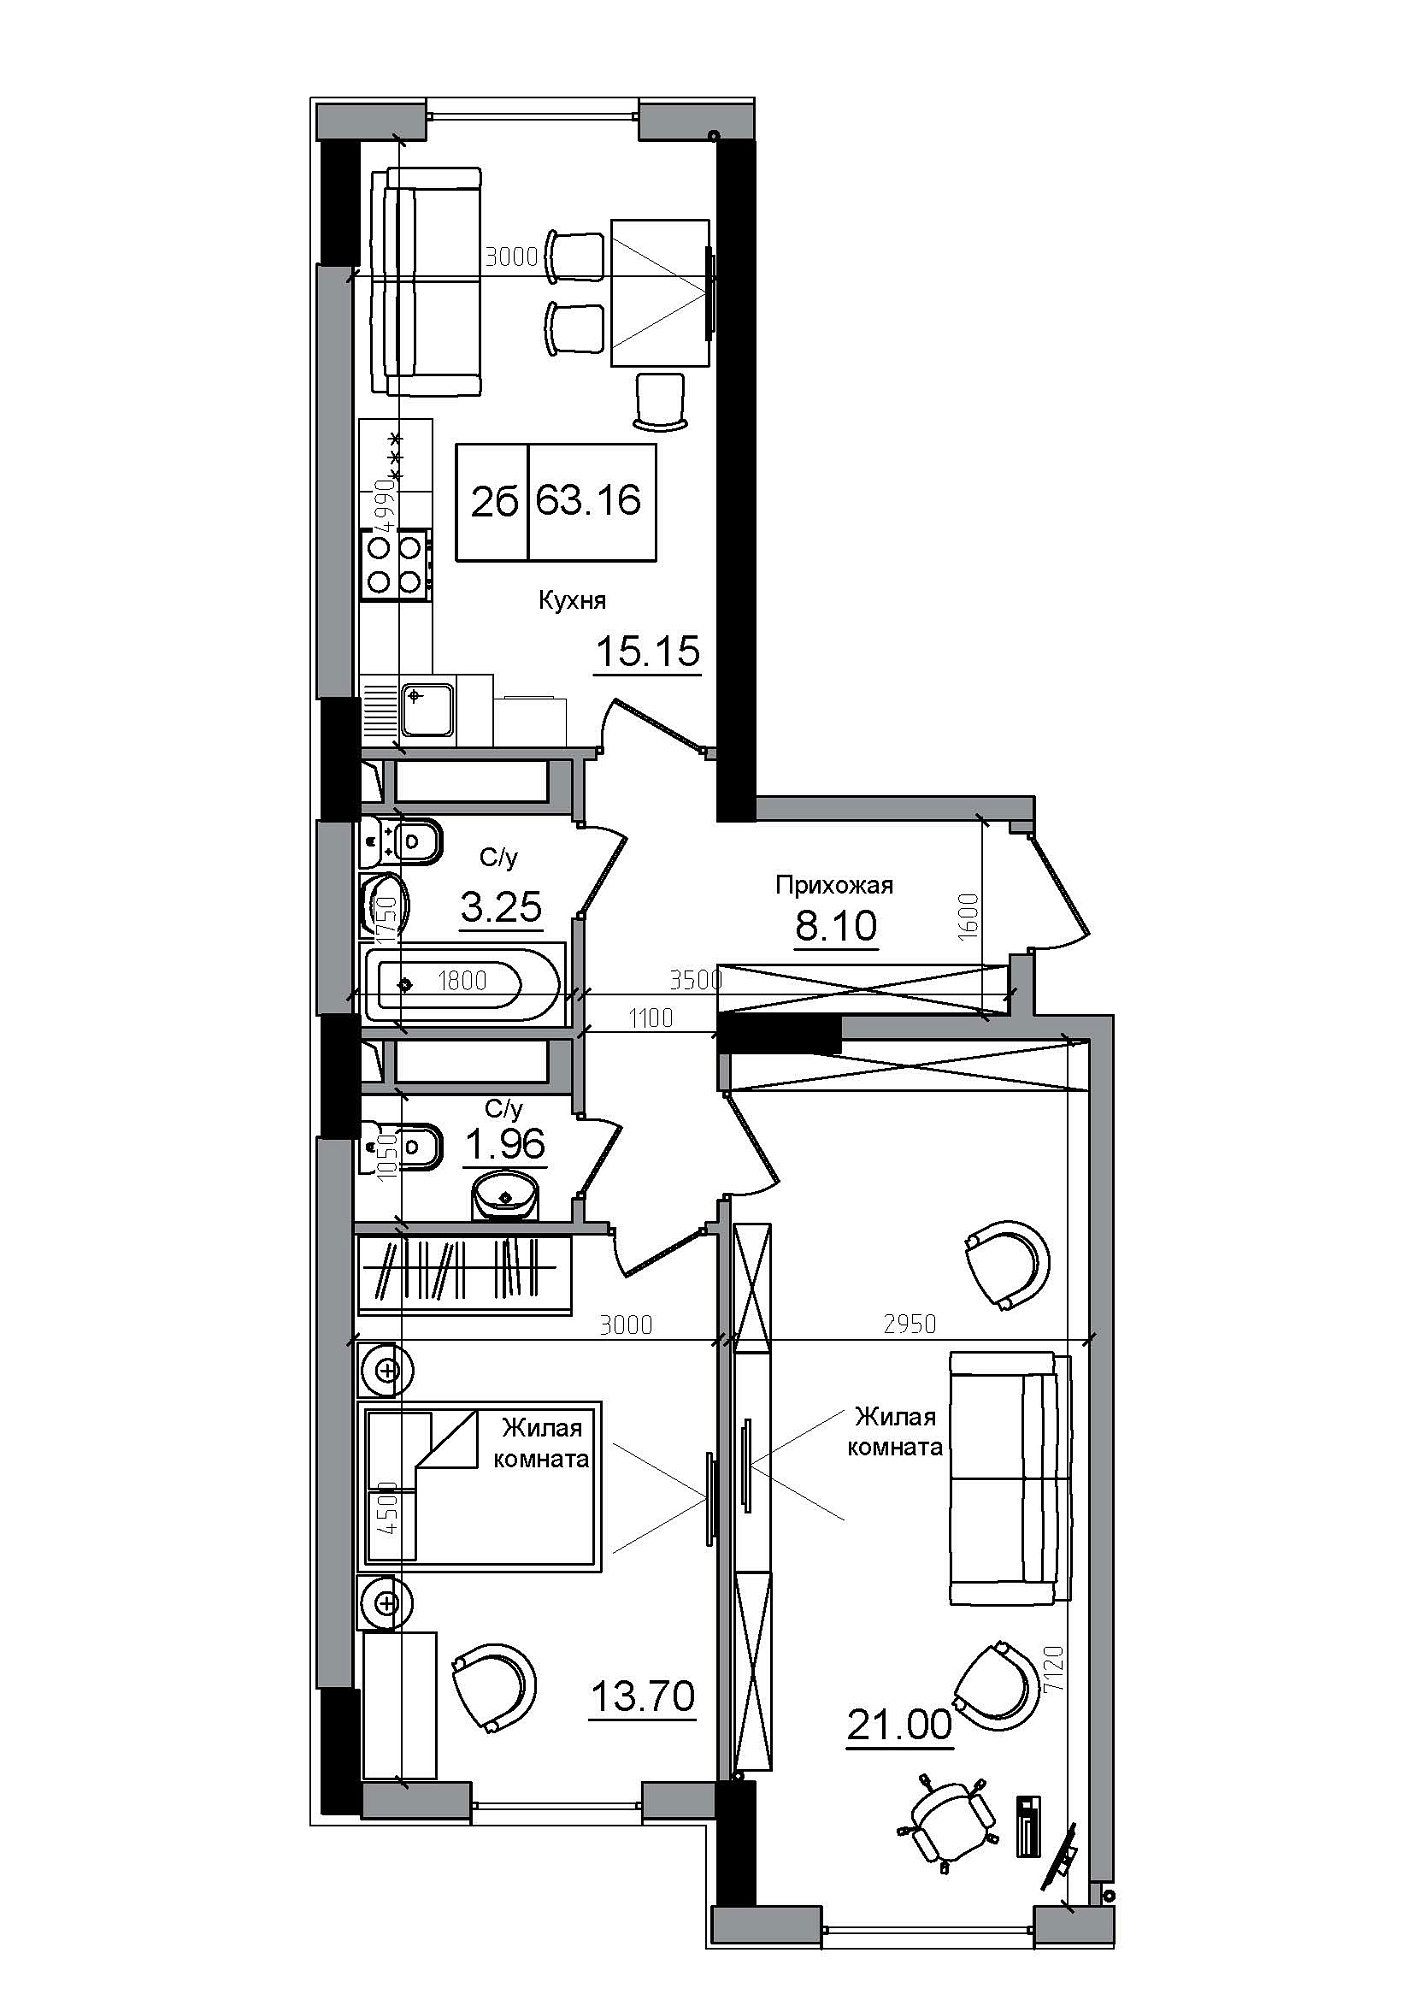 Планування 2-к квартира площею 63.16м2, AB-12-12/00004.